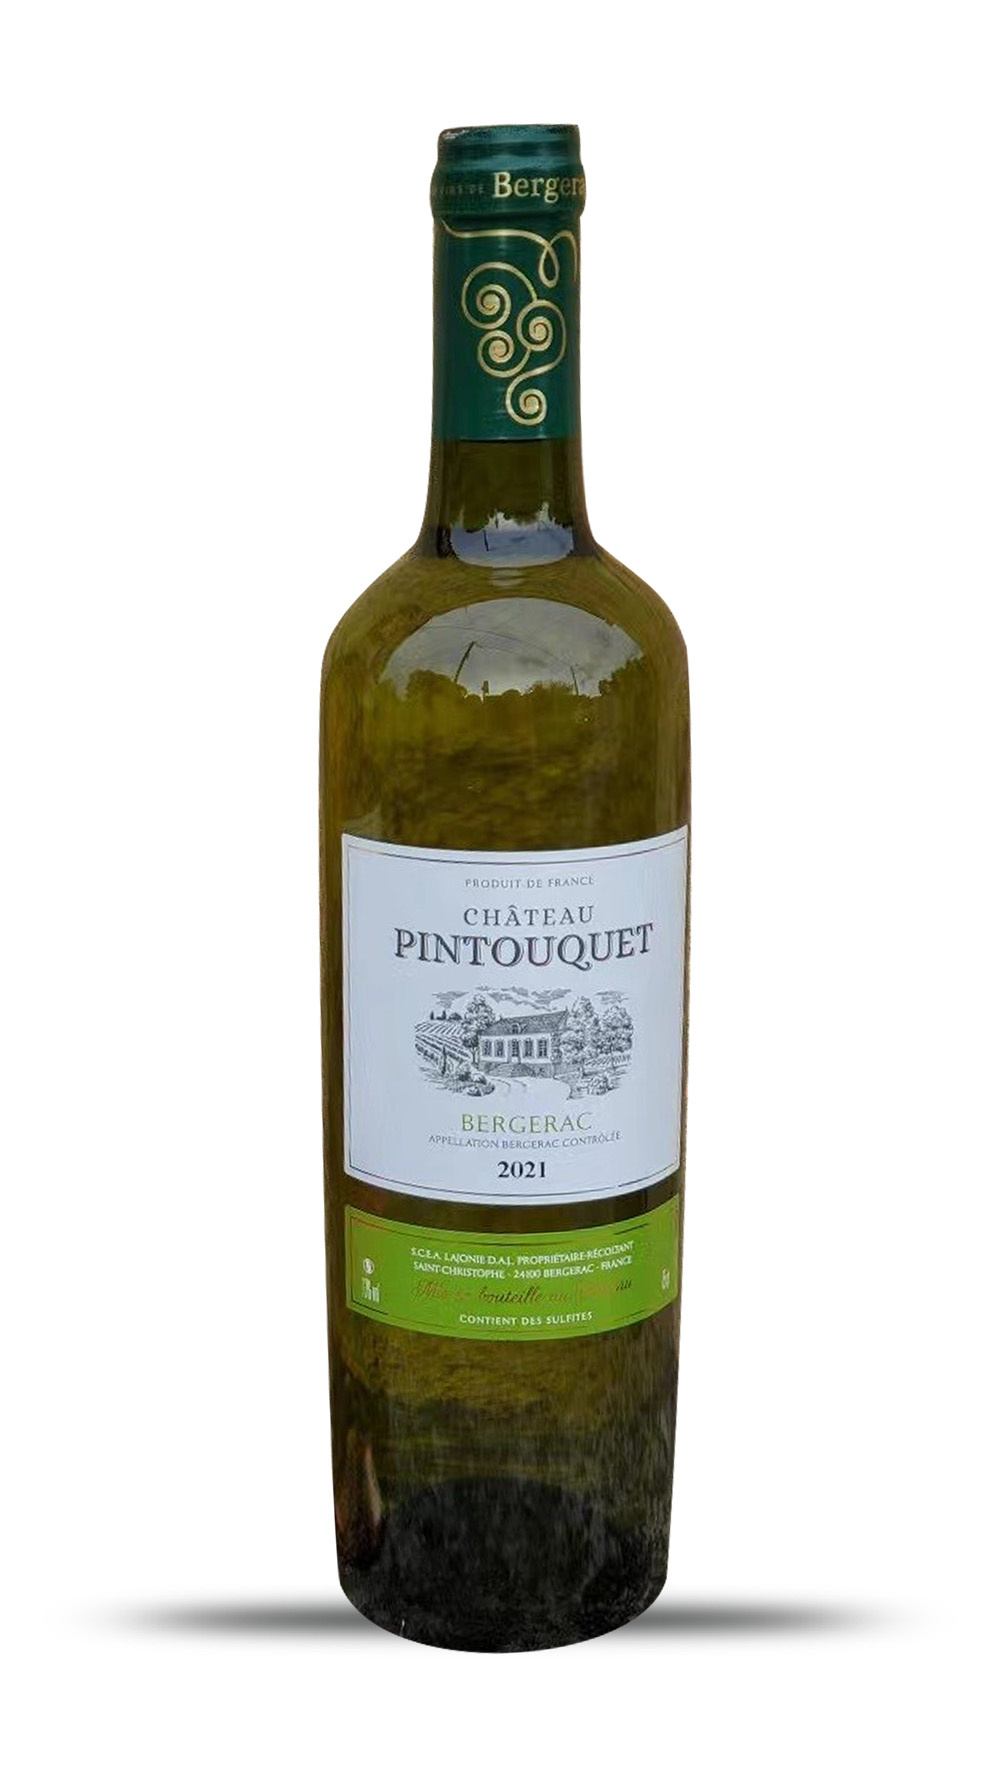 Pintouquet Bergerac blanc 2021 - Französischer Weißwein online kaufen -  Wineful Wein Online-Shop